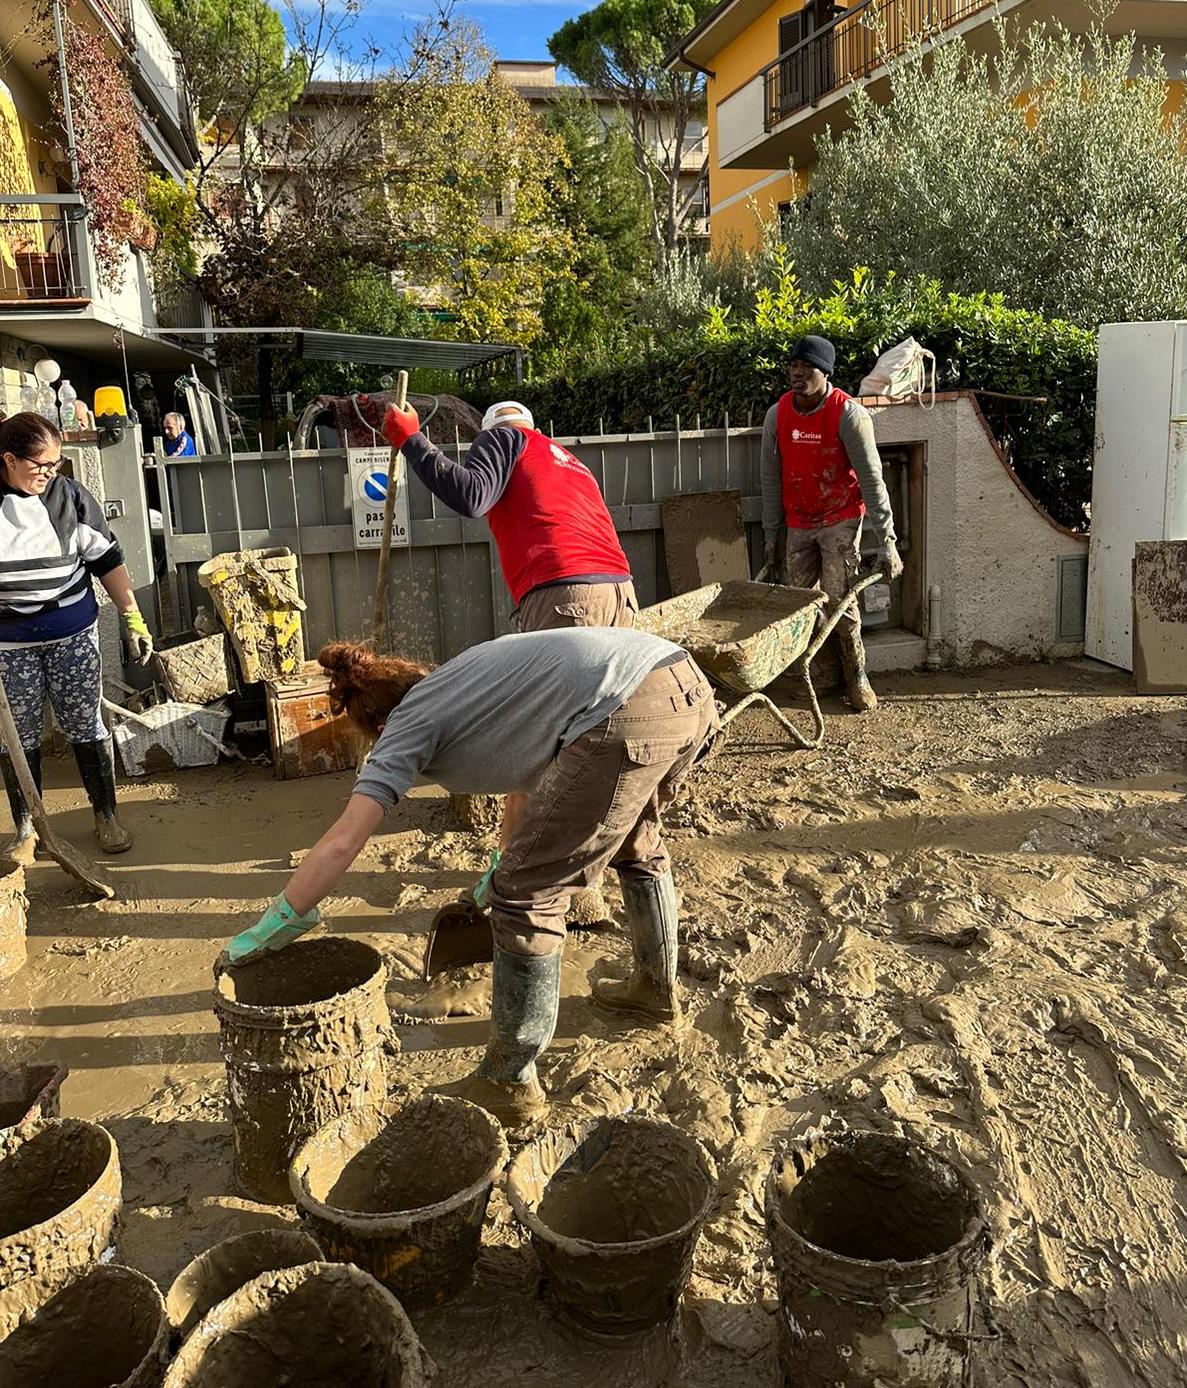 Solidarietà alle popolazioni dopo l'alluvione, Cgil Firenze attiva volontari e raccoglie fondi e materiali - Piana Notizie